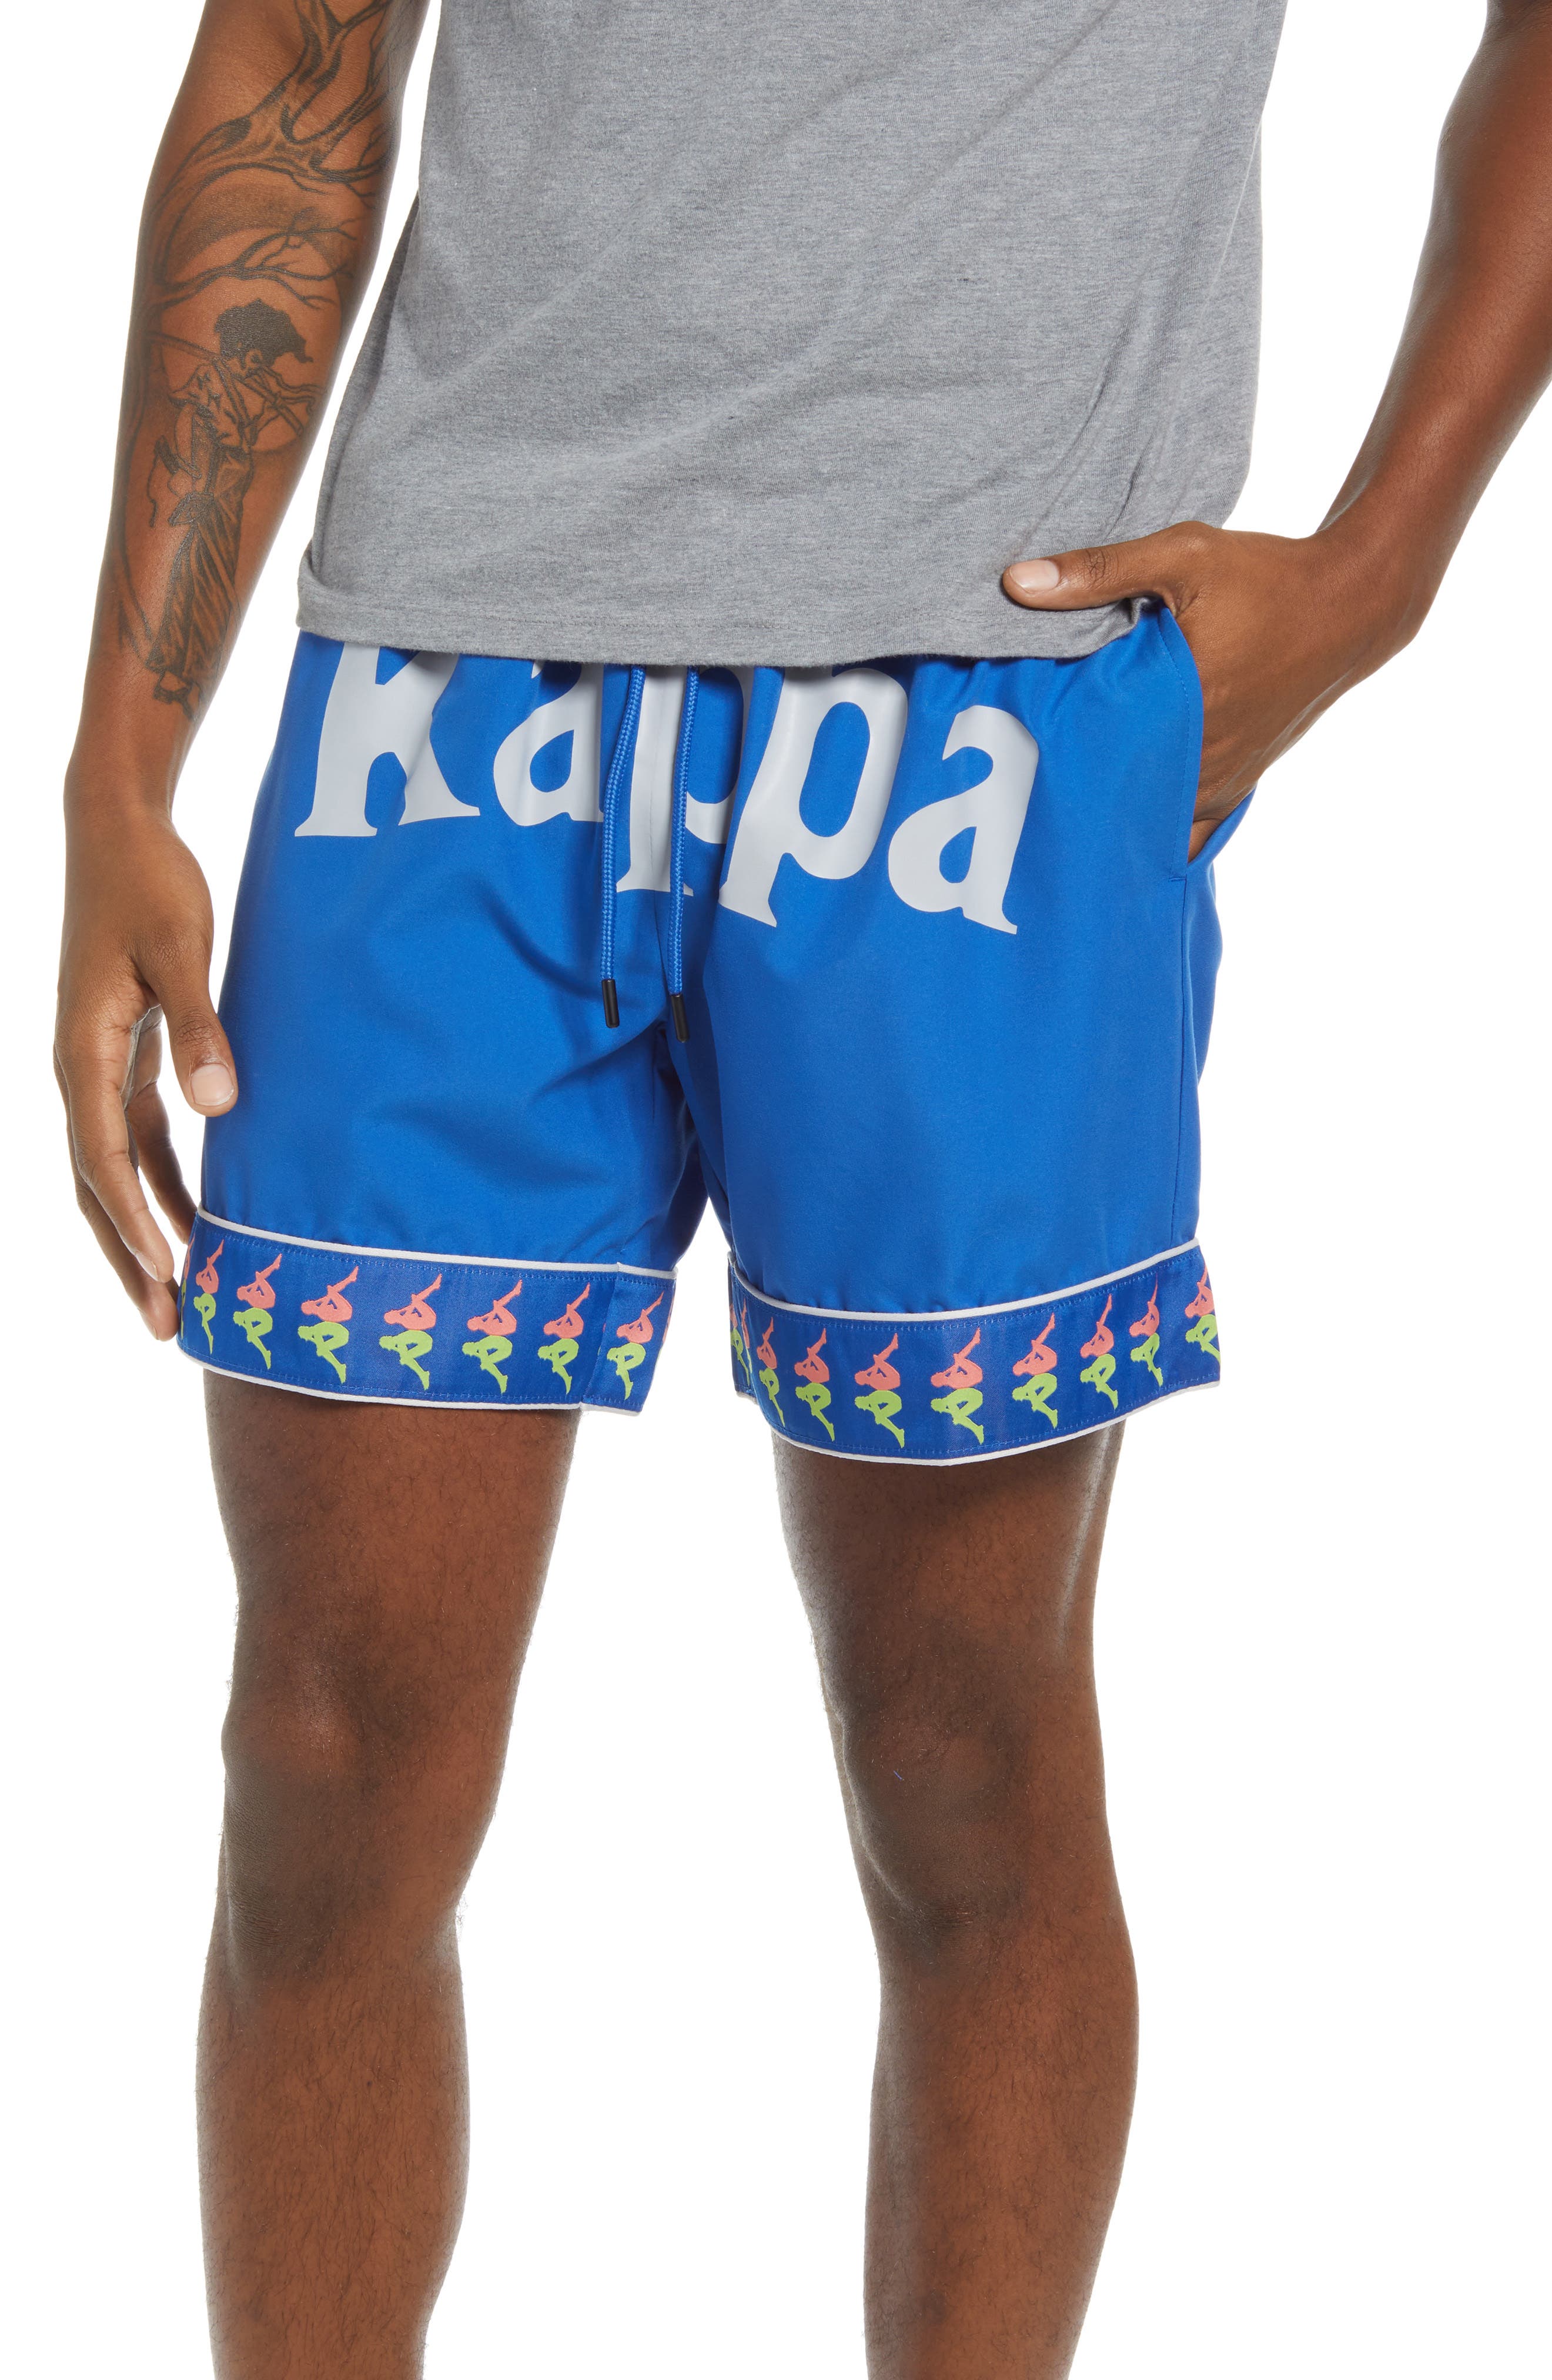 Kappa Men's 222 Banda Calabash Shorts in Blue Lapis/Lime Green/Orange at Nordstrom, Size X-Large